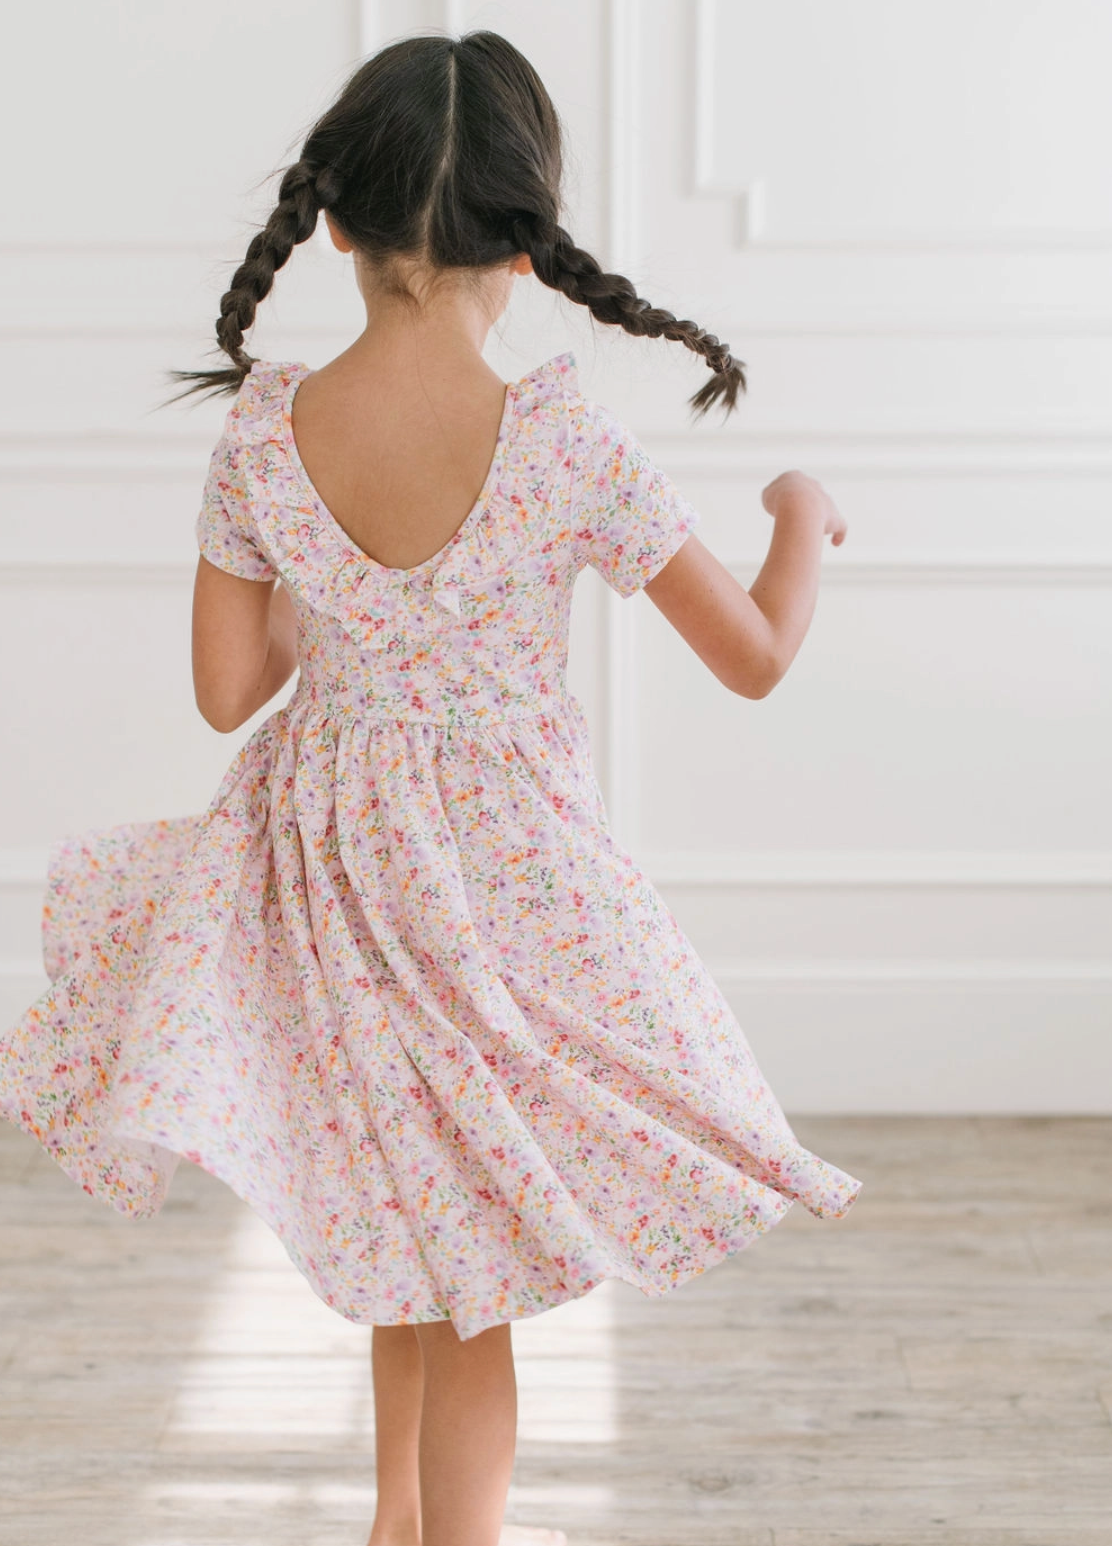 Harlow Dress in Watercolor Bloom Pocket Twirl Dress